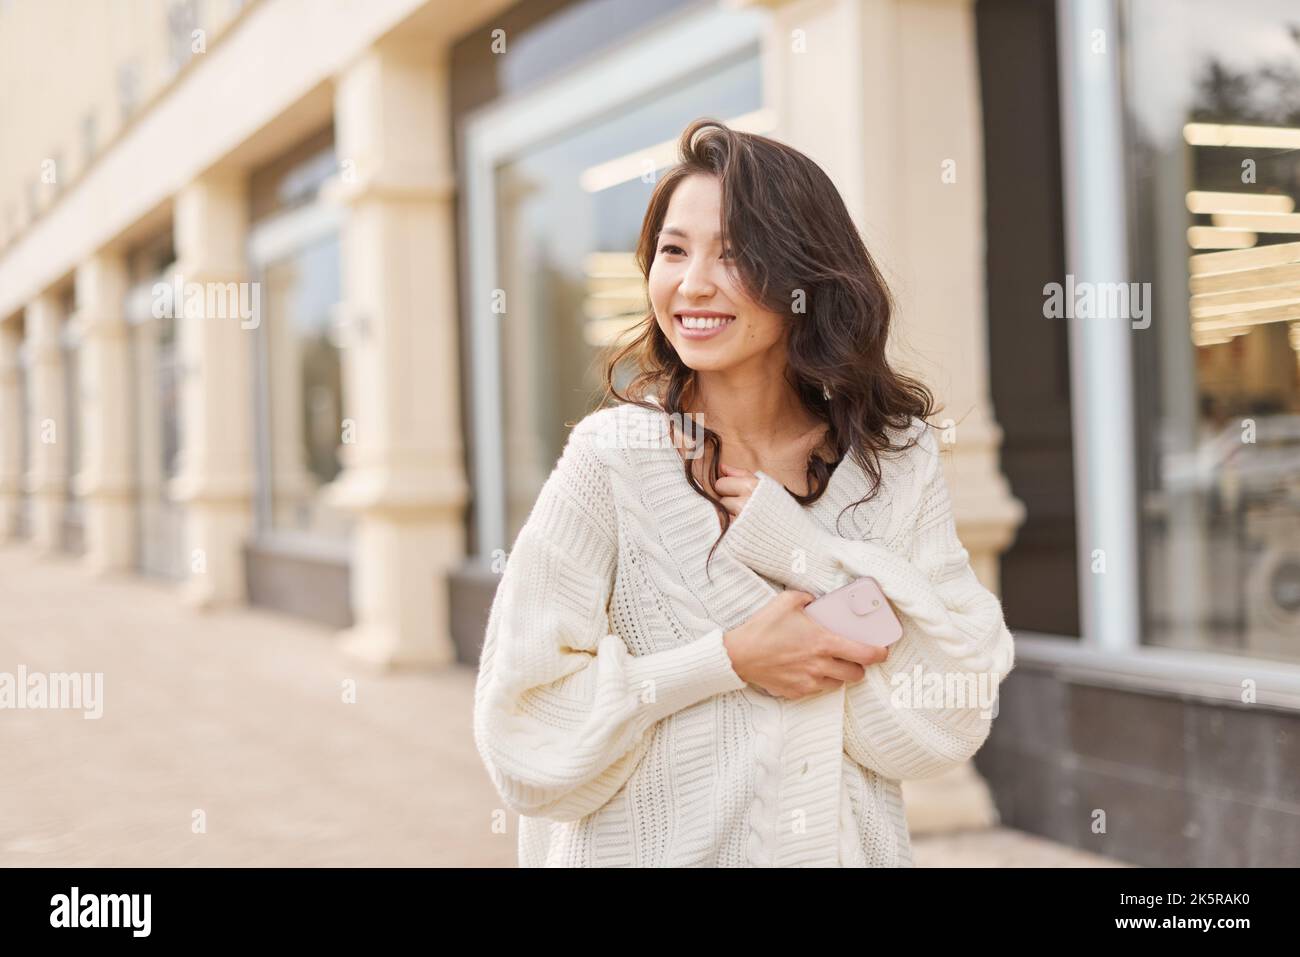 Lifestyle ritratto bella donna asiatica kazaka con un sorriso brillante Foto Stock